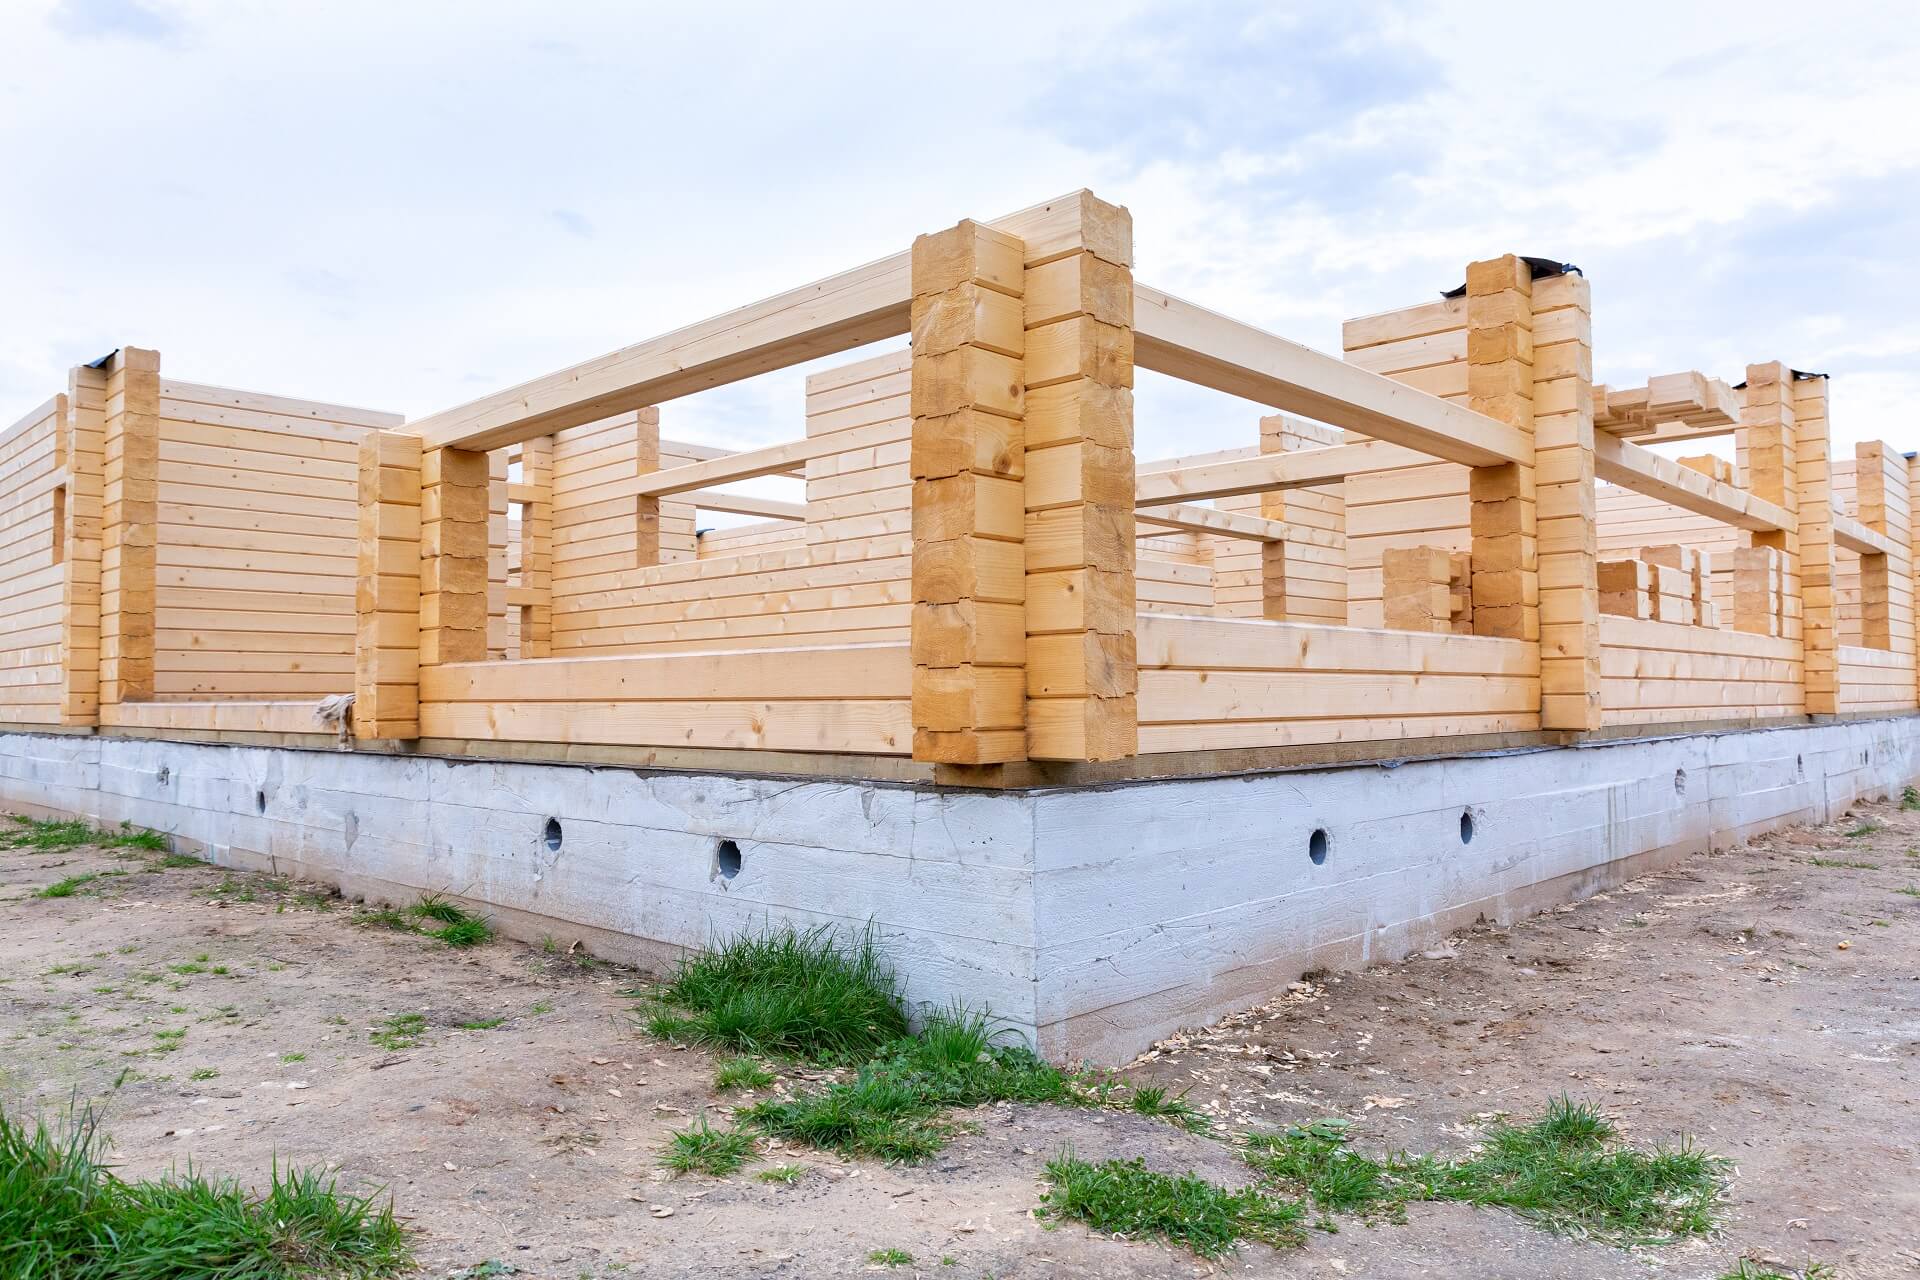 Ein Bild, das den Bauprozess eines Holzhauses auf einem Zementfundament zeigt. Erfahren Sie mehr über die Bedeutung von Stabilität und einer soliden Grundlage in diesem Bauprojekt.